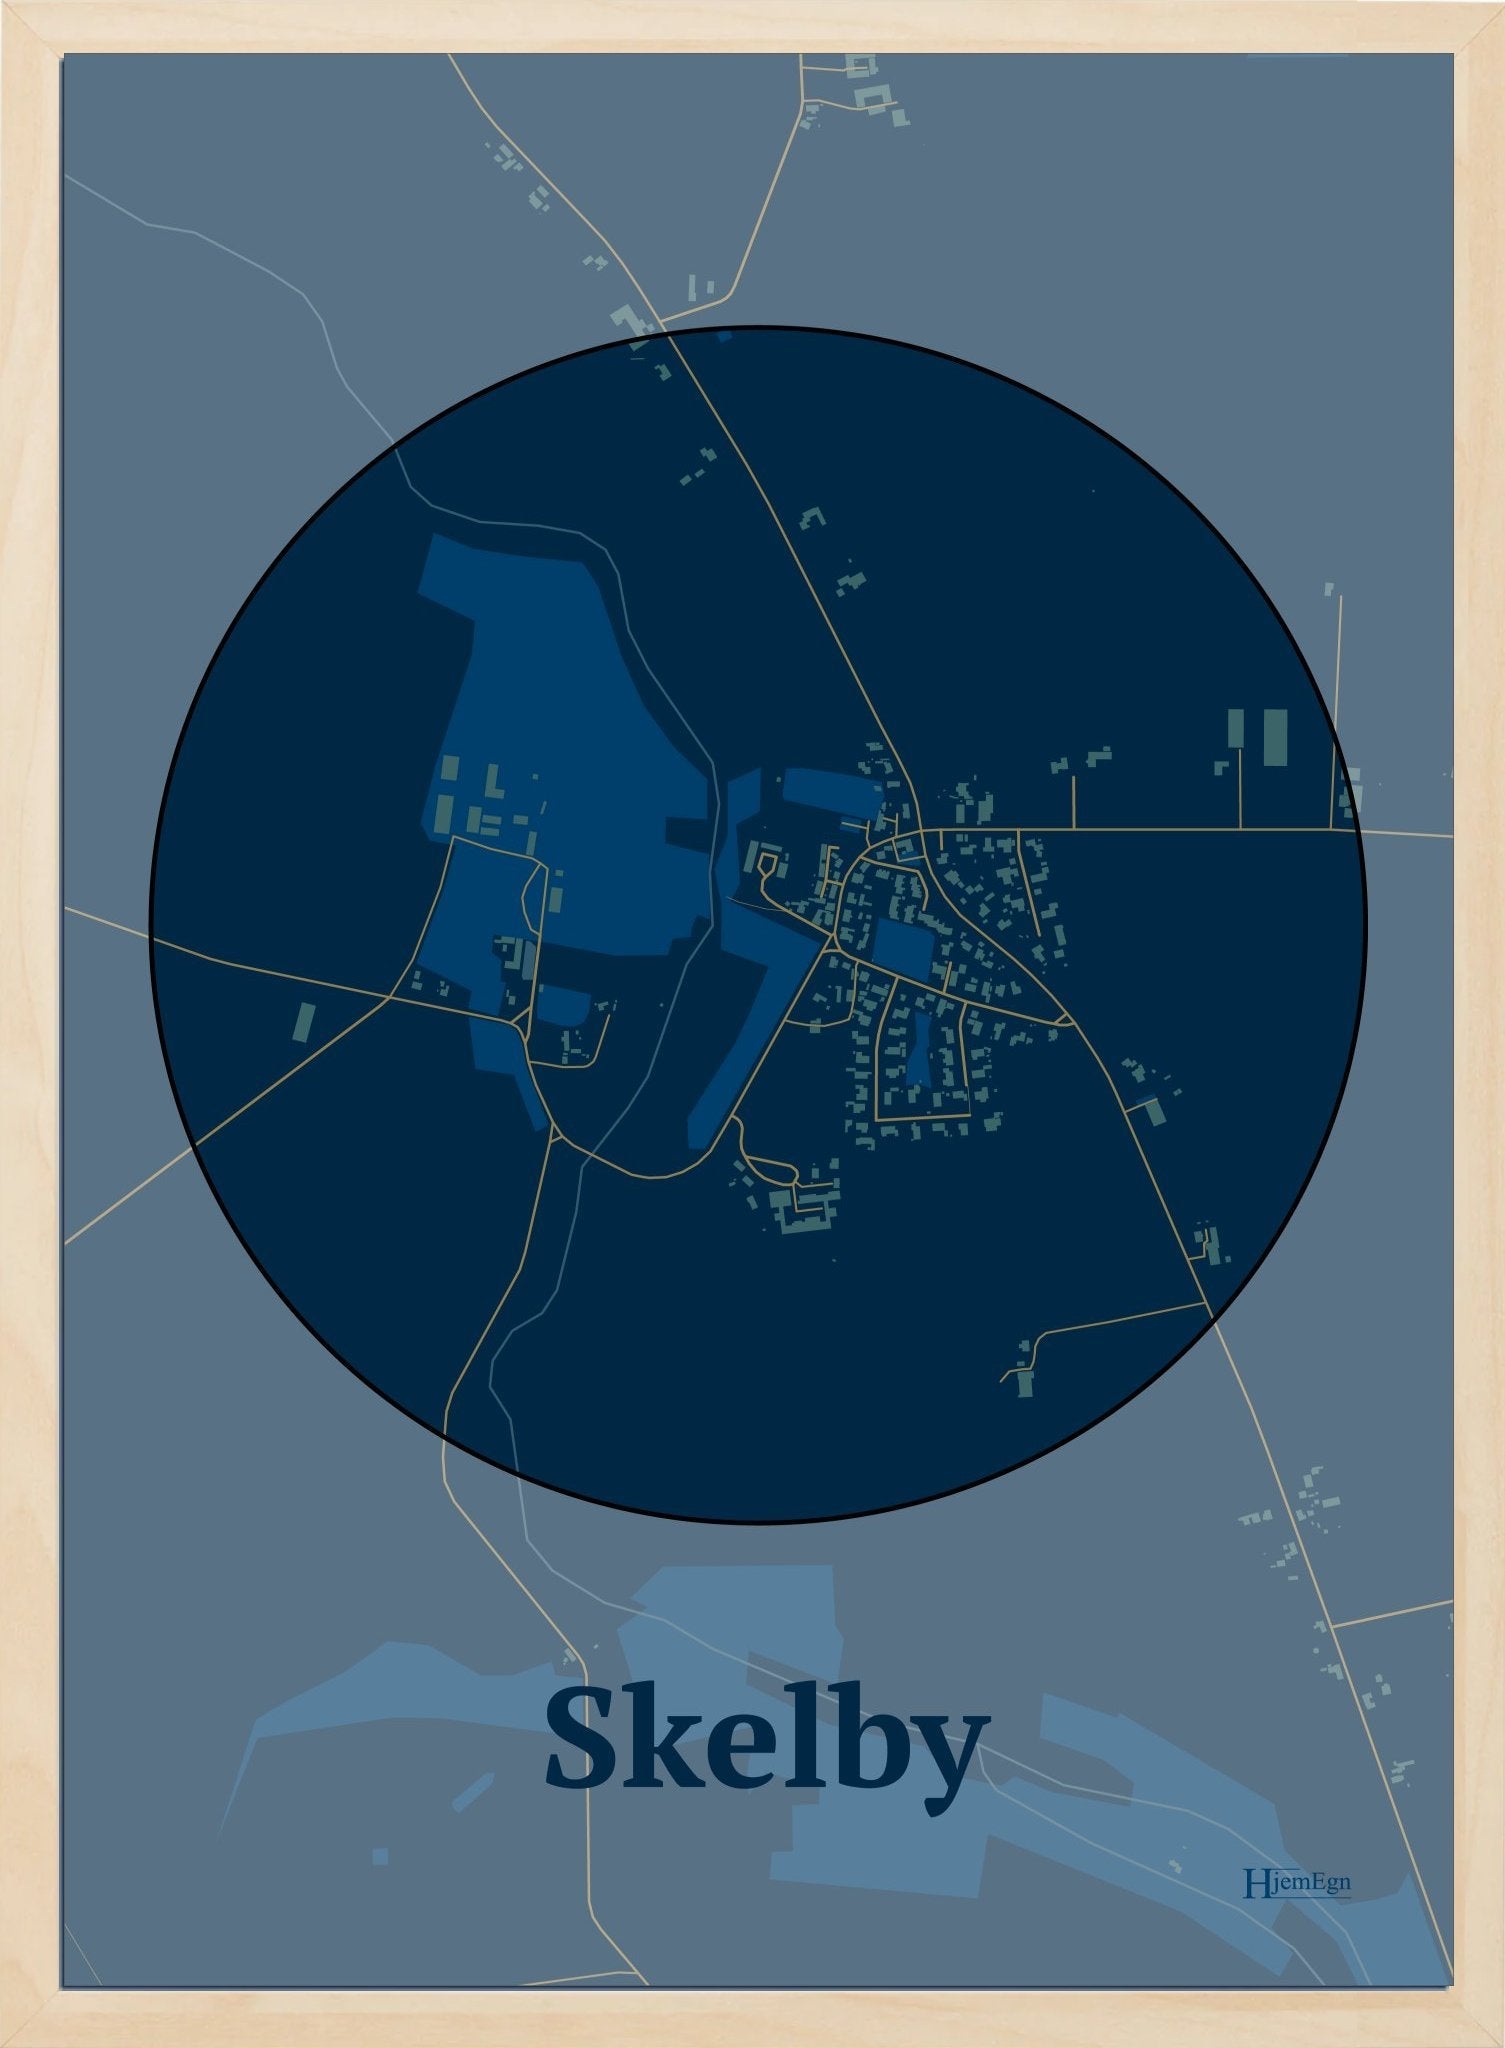 Skelby plakat i farve mørk blå og HjemEgn.dk design centrum. Design bykort for Skelby